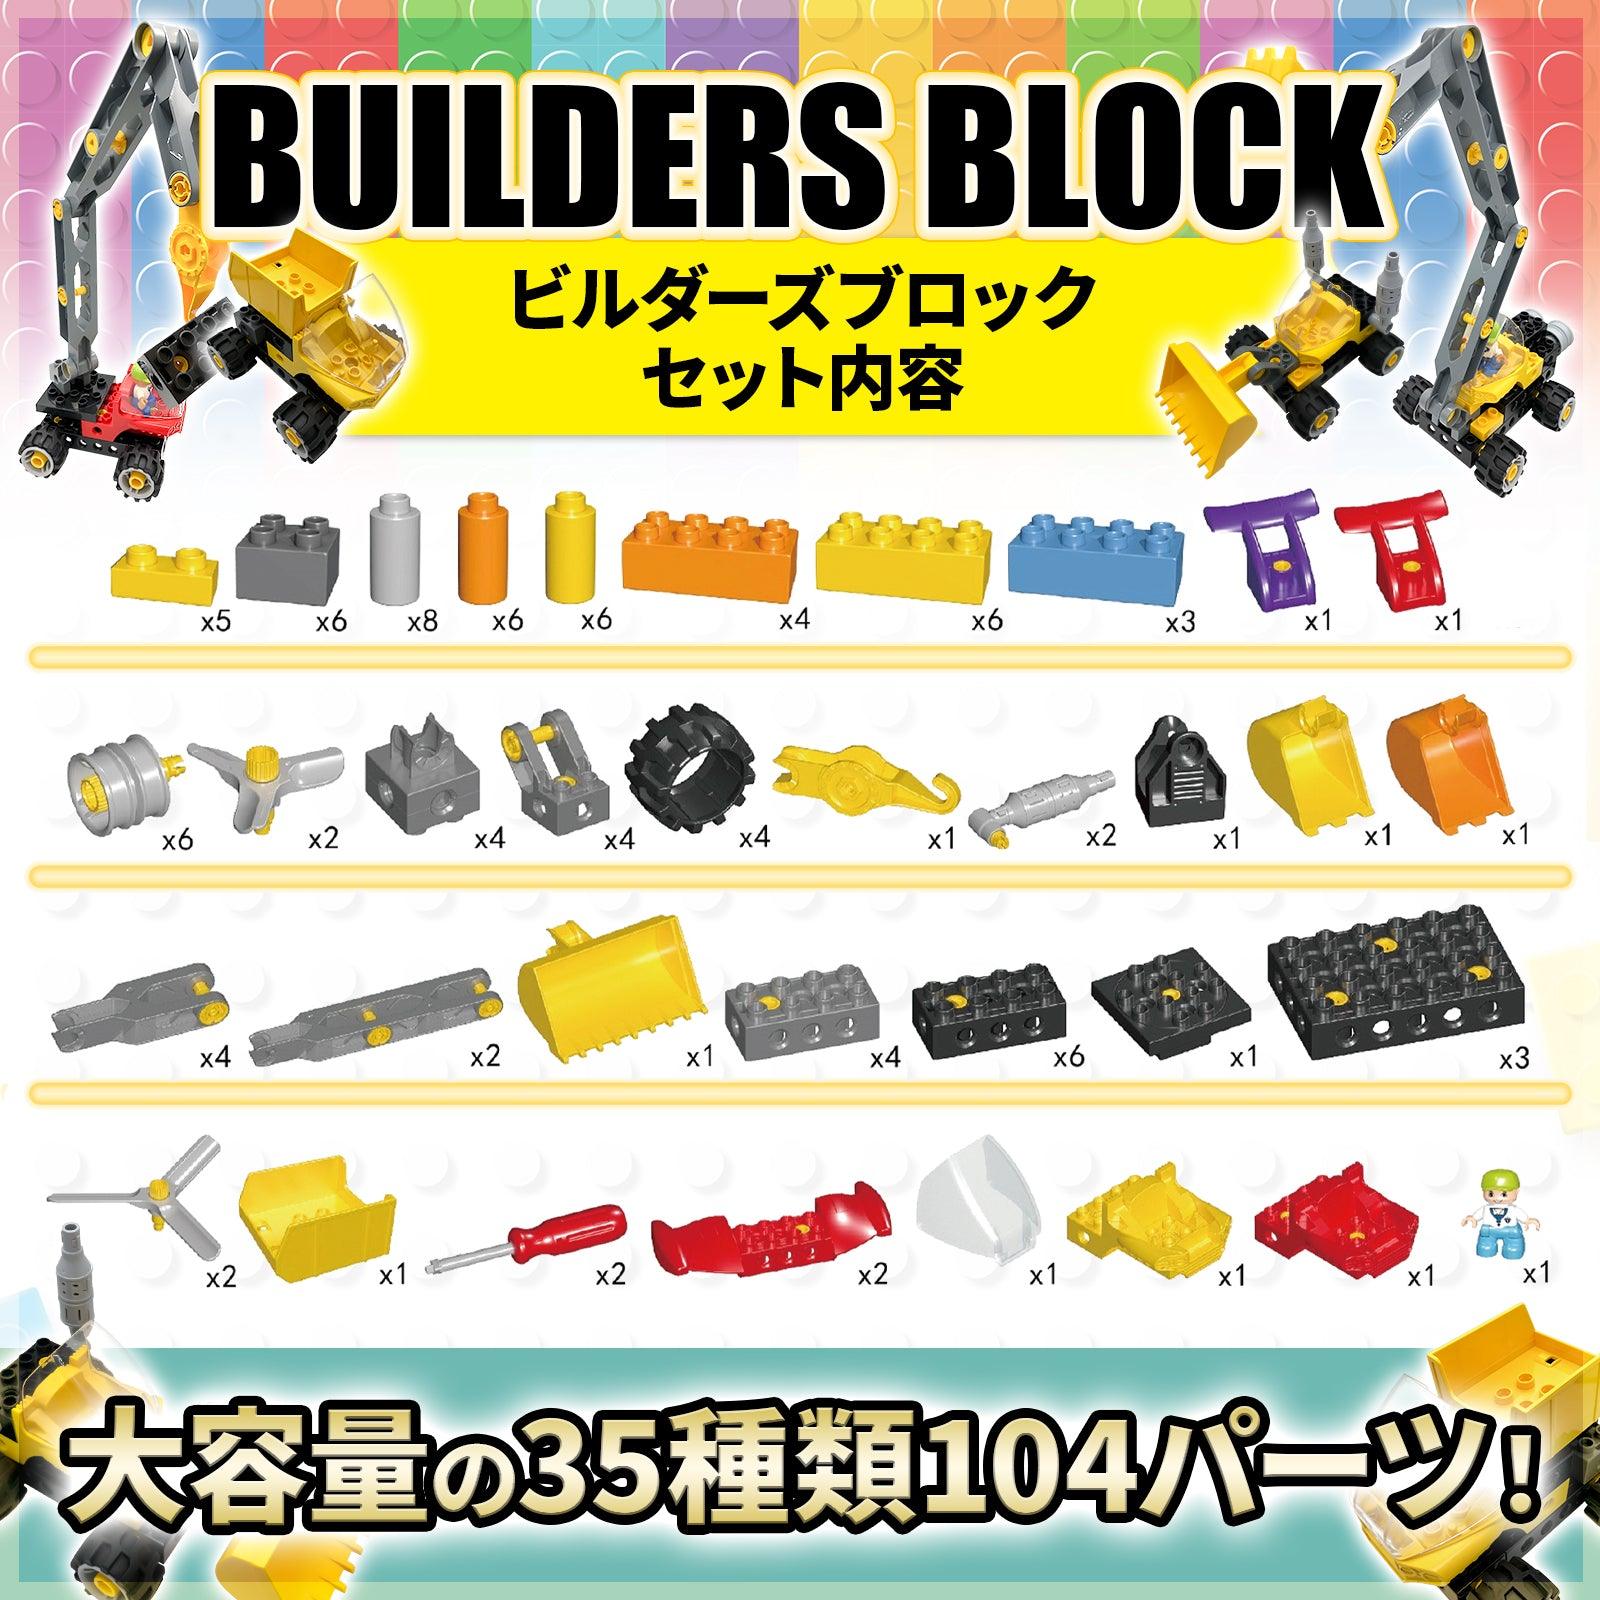 【はたらくくるま×ブロック】 ブロックおもちゃ 104ピース ビルダーズブロック デュプロ アンパンマンブロック 互換